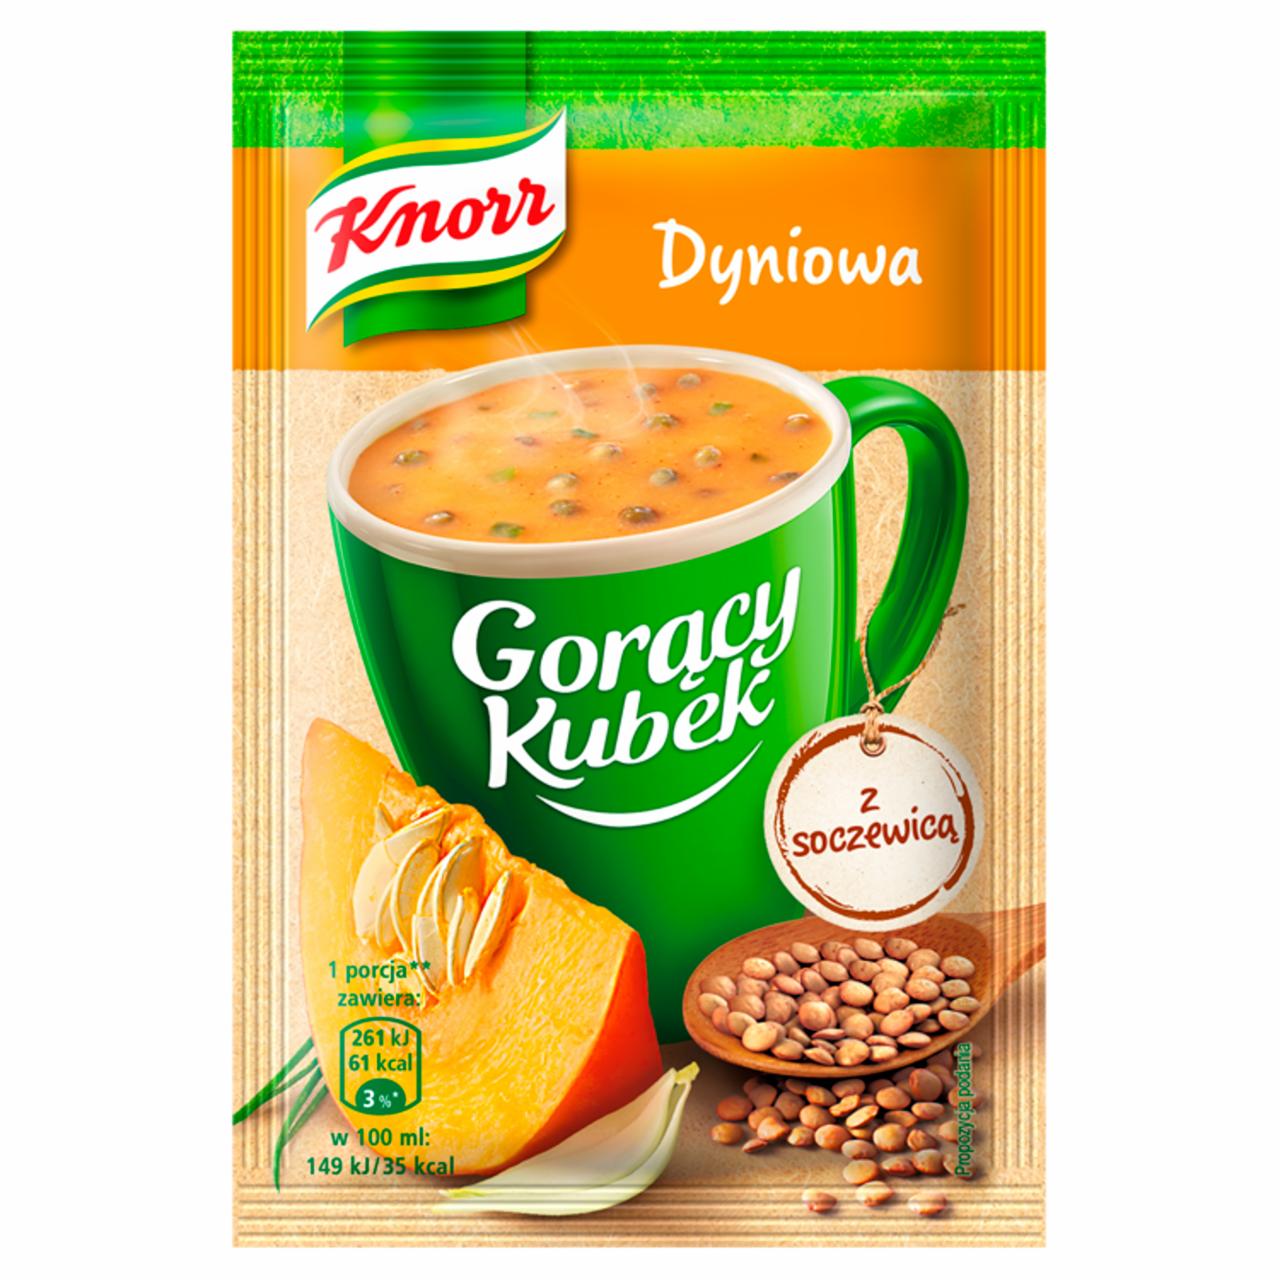 Zdjęcia - Knorr Gorący Kubek Dyniowa z soczewicą 22 g